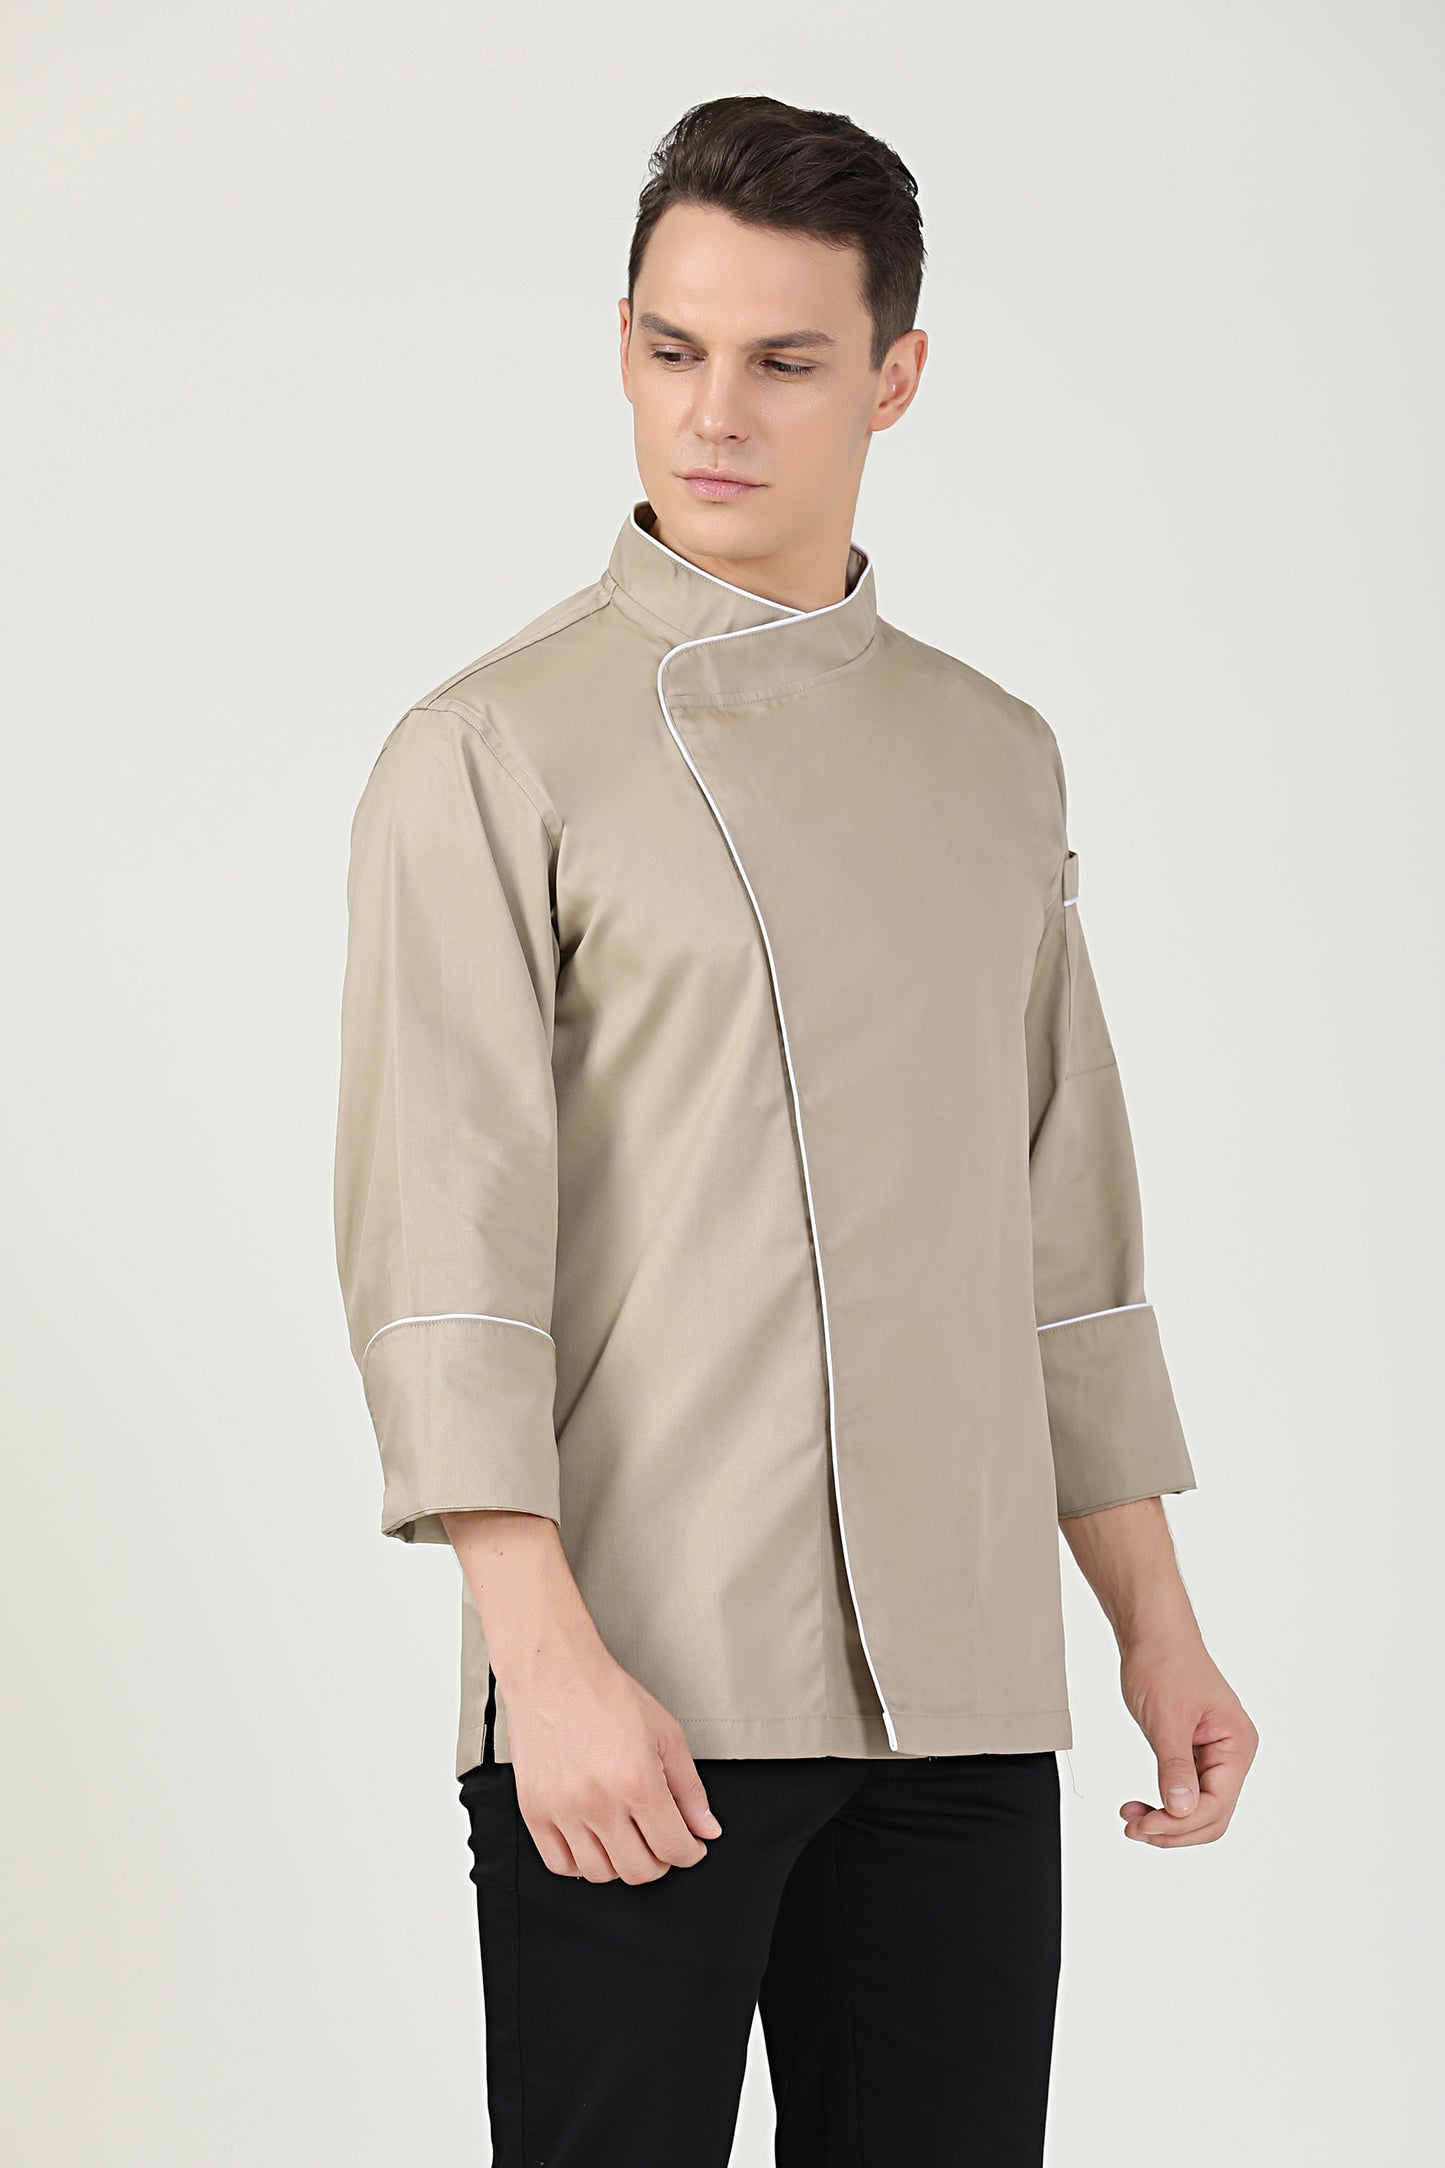 Sage Khaki Chef Jacket, Long Sleeve